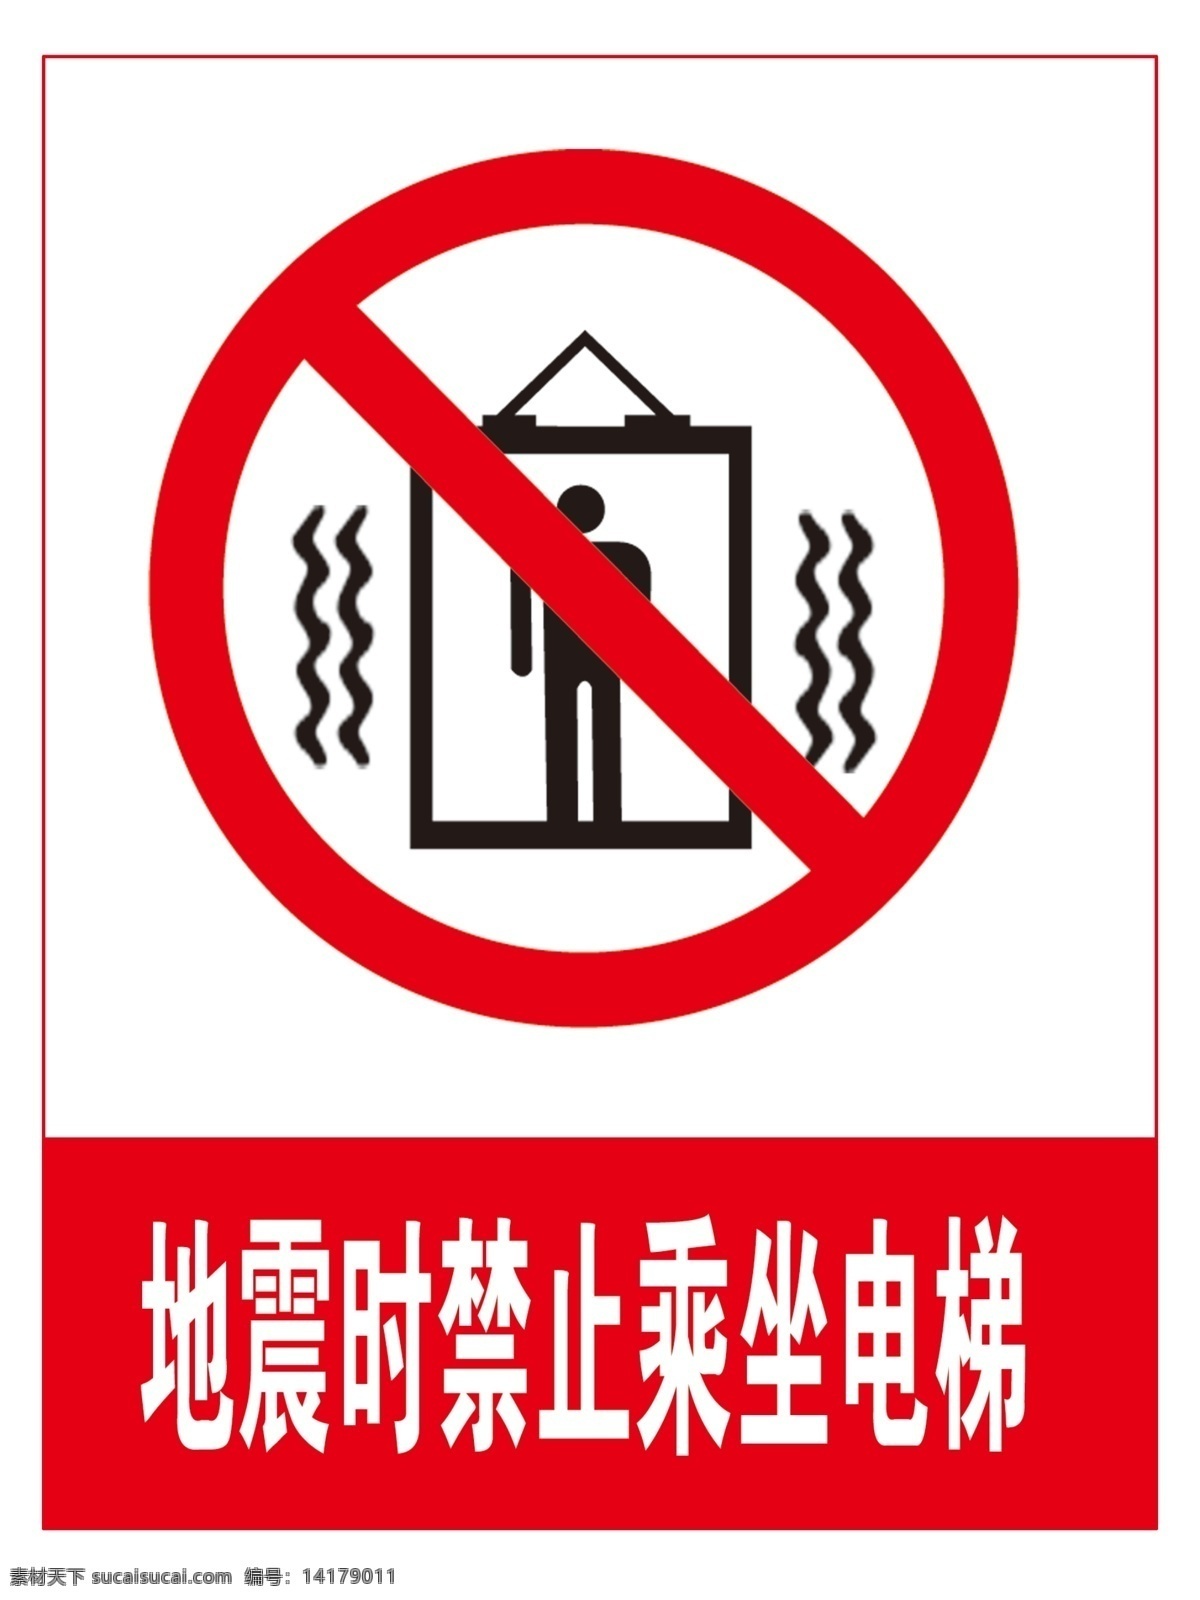 地震 时 禁止 乘坐 电梯 矢量标识素材 标识素材 警示 公共标识 警告标语 标志图标 公共标识标志